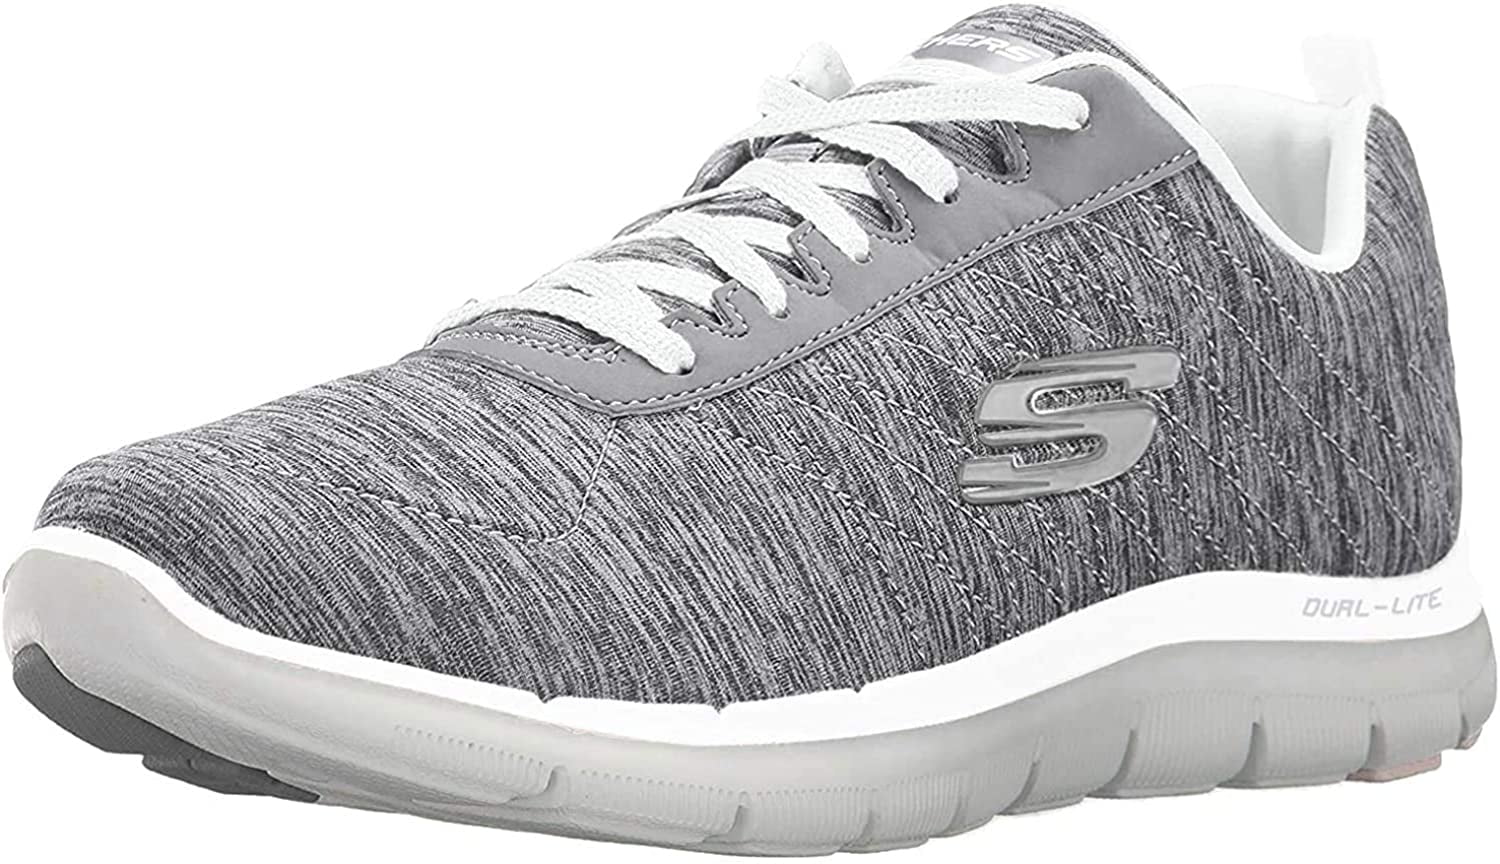 En todo el mundo Roca rápido Skechers Women's Flex Appeal 2.0 Grey Sneaker 10 M US - Walmart.com